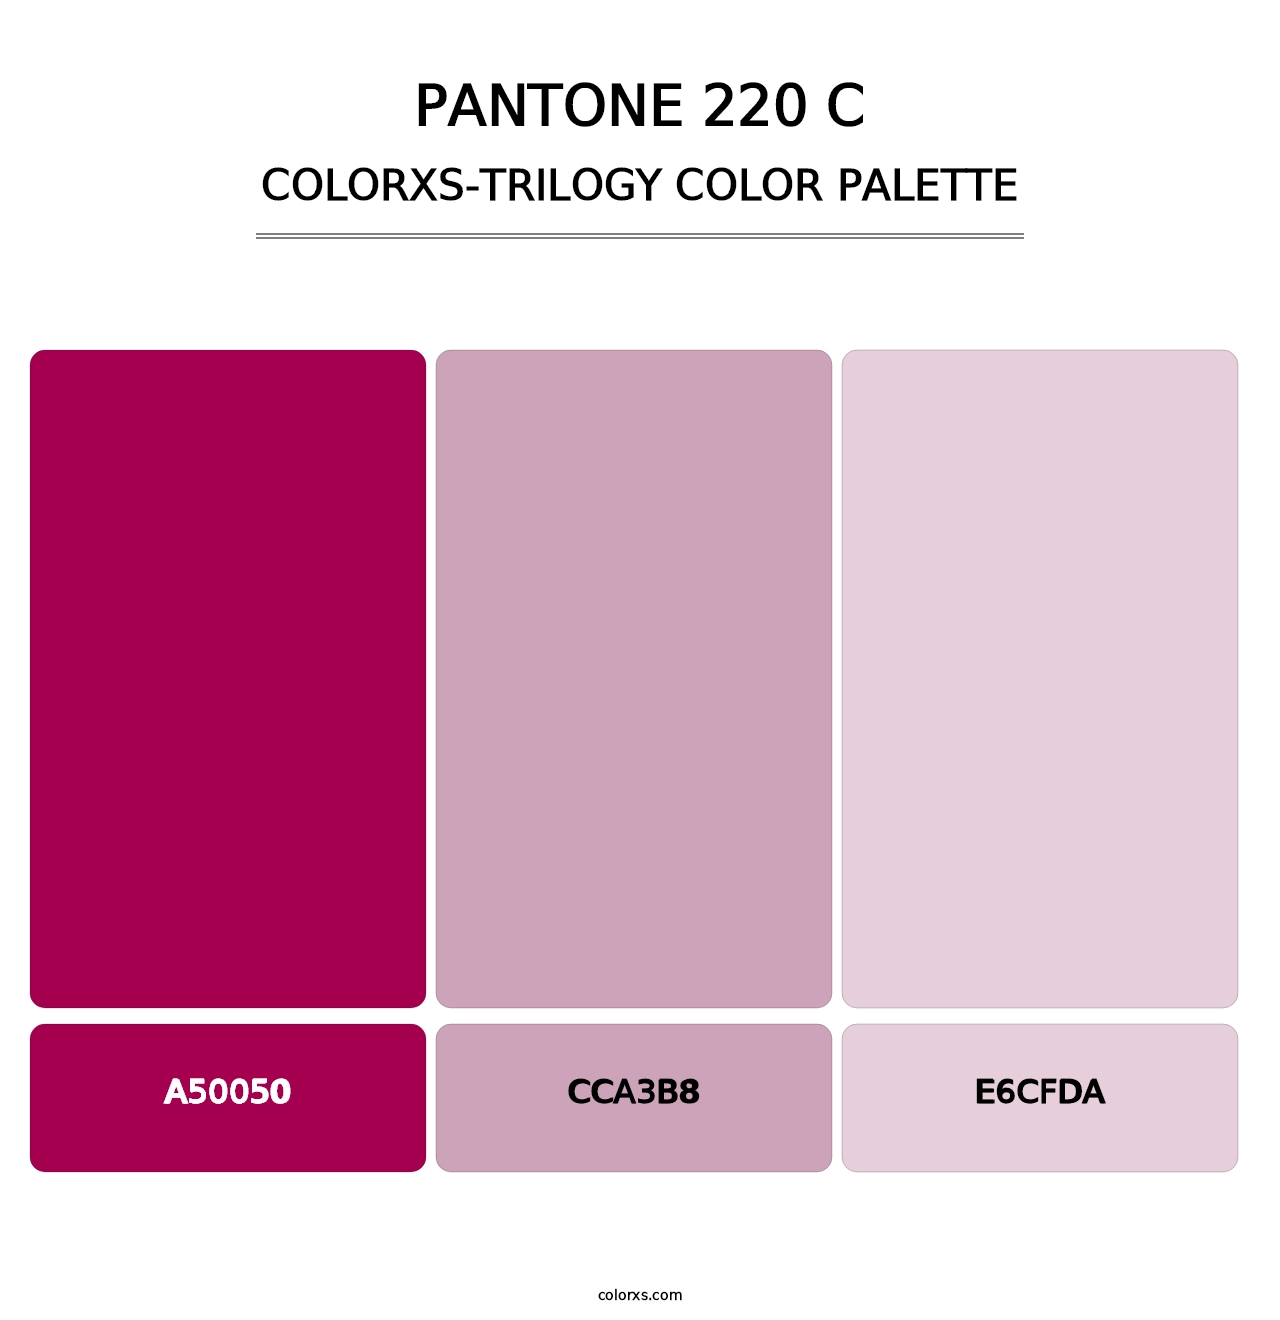 PANTONE 220 C - Colorxs Trilogy Palette